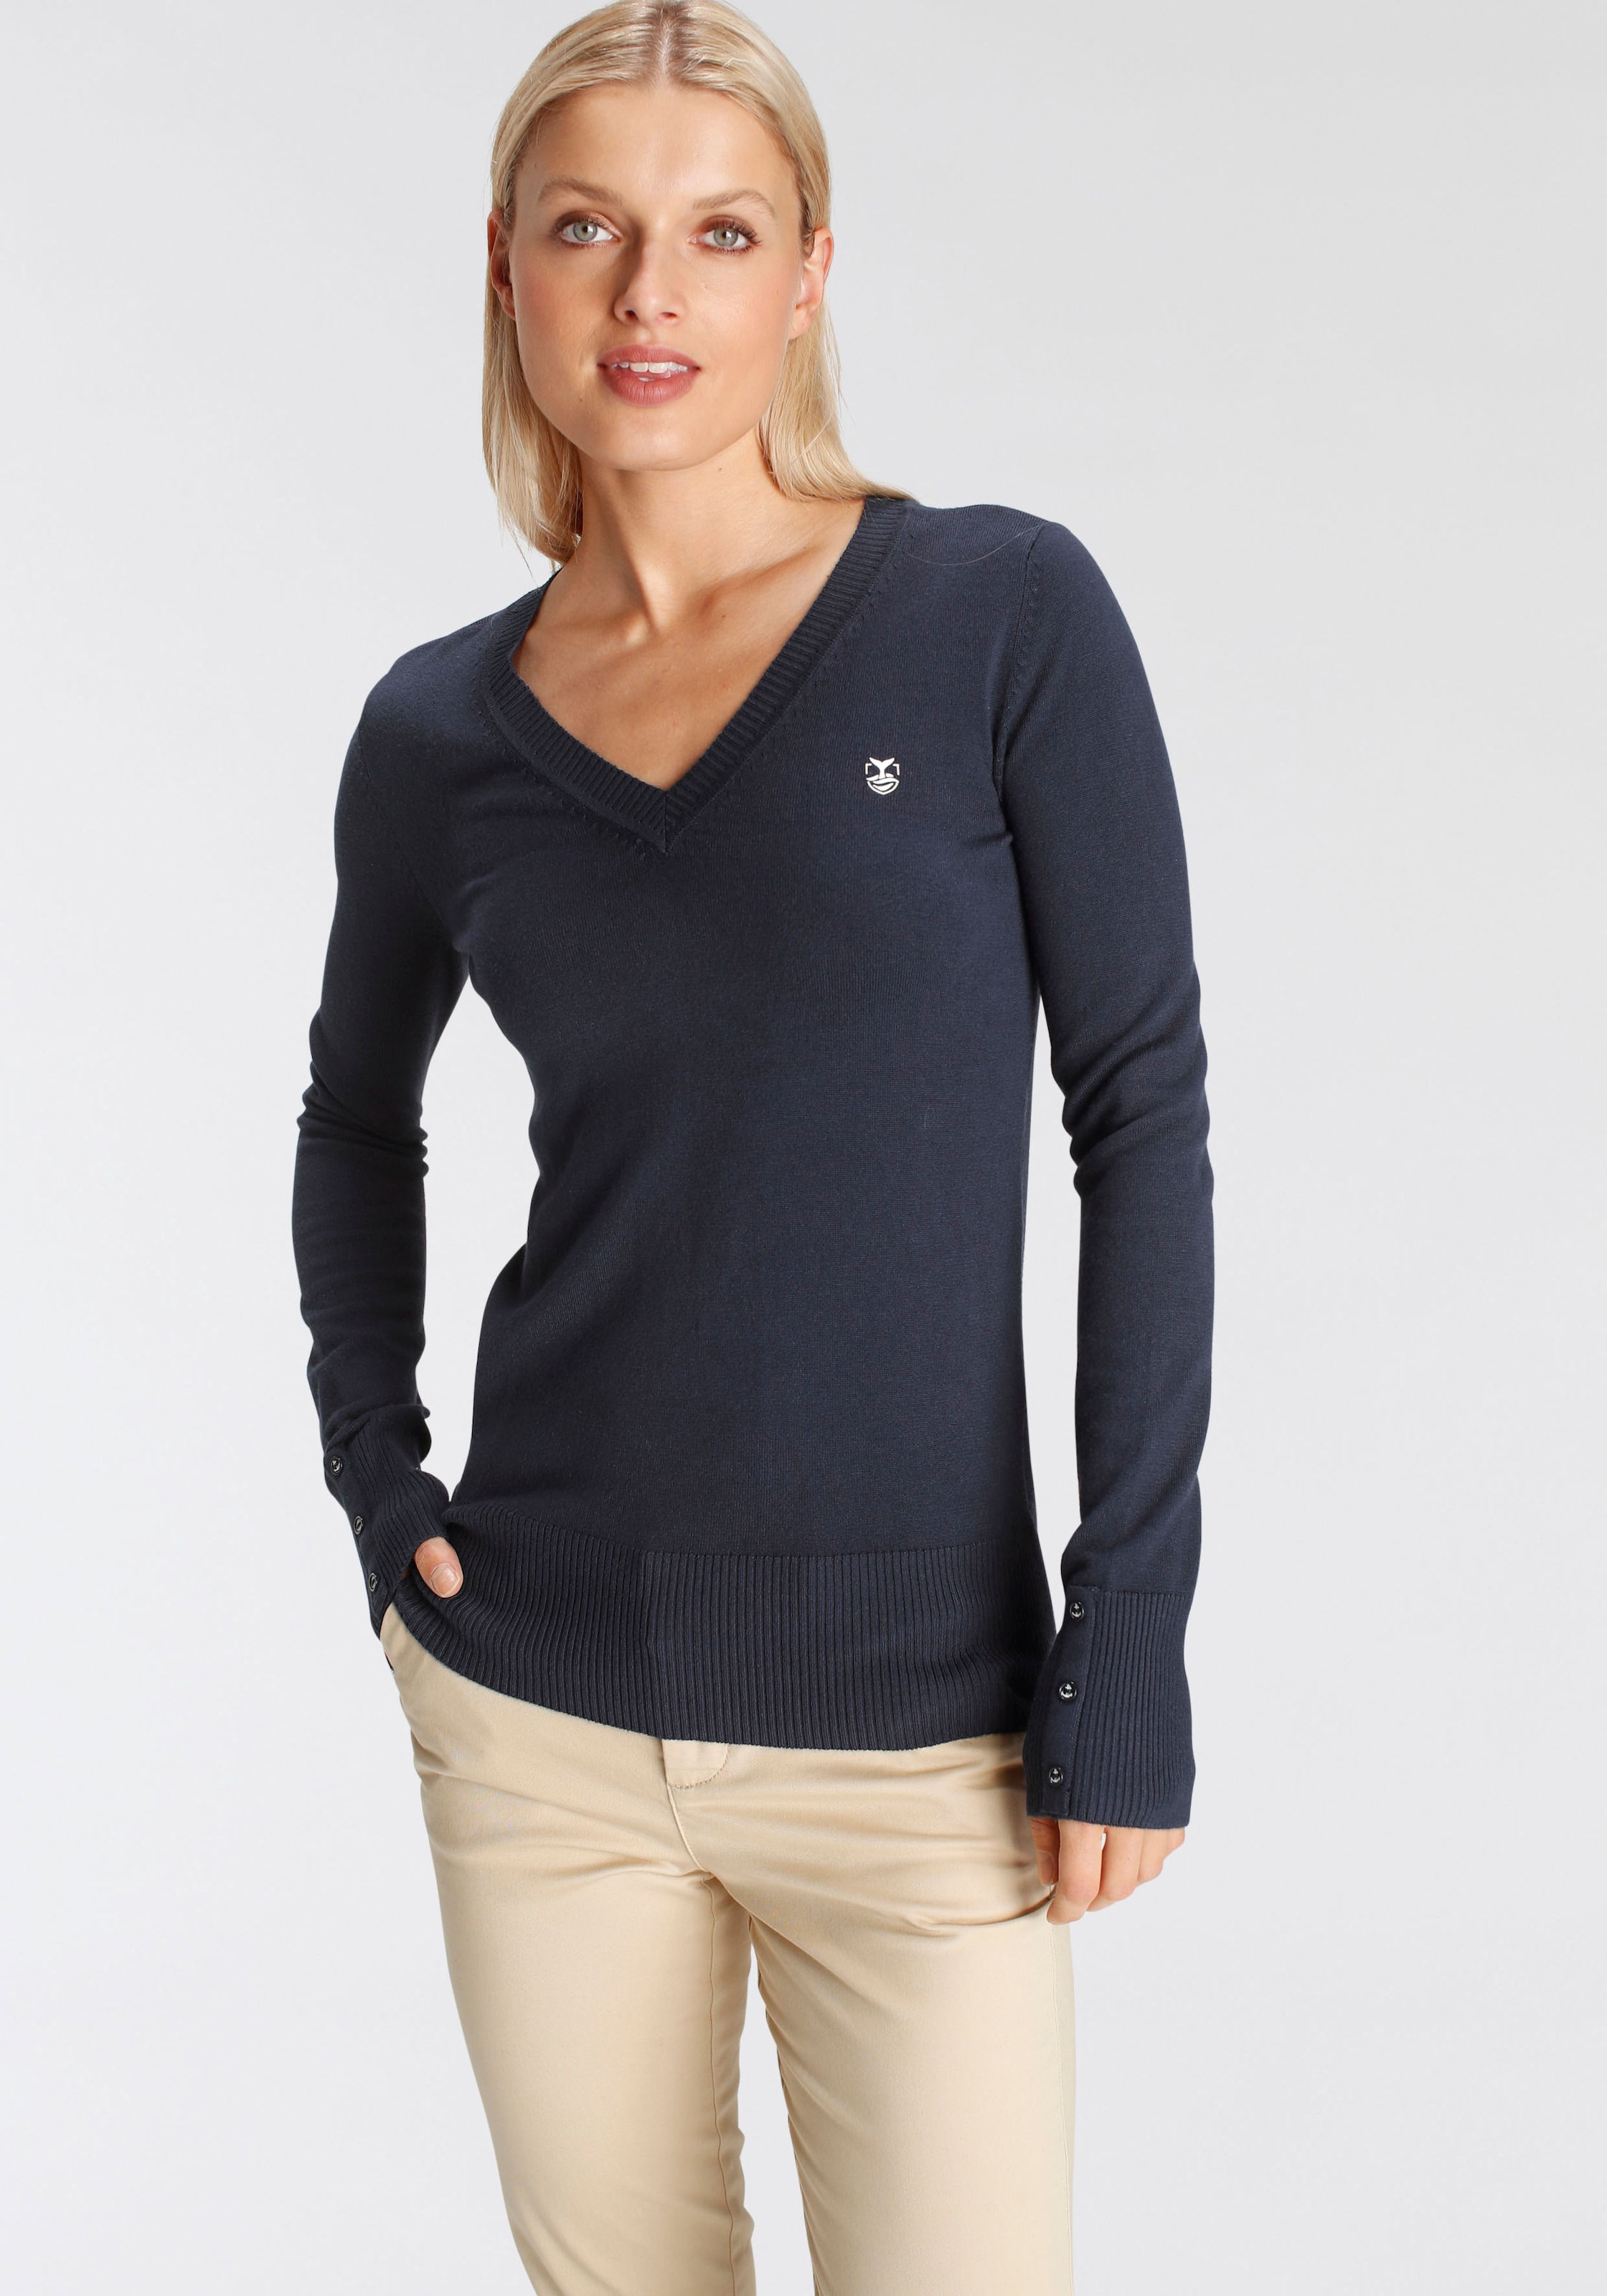 DELMAO V-Ausschnitt-Pullover mit kleinem Logodruck auf der Brust